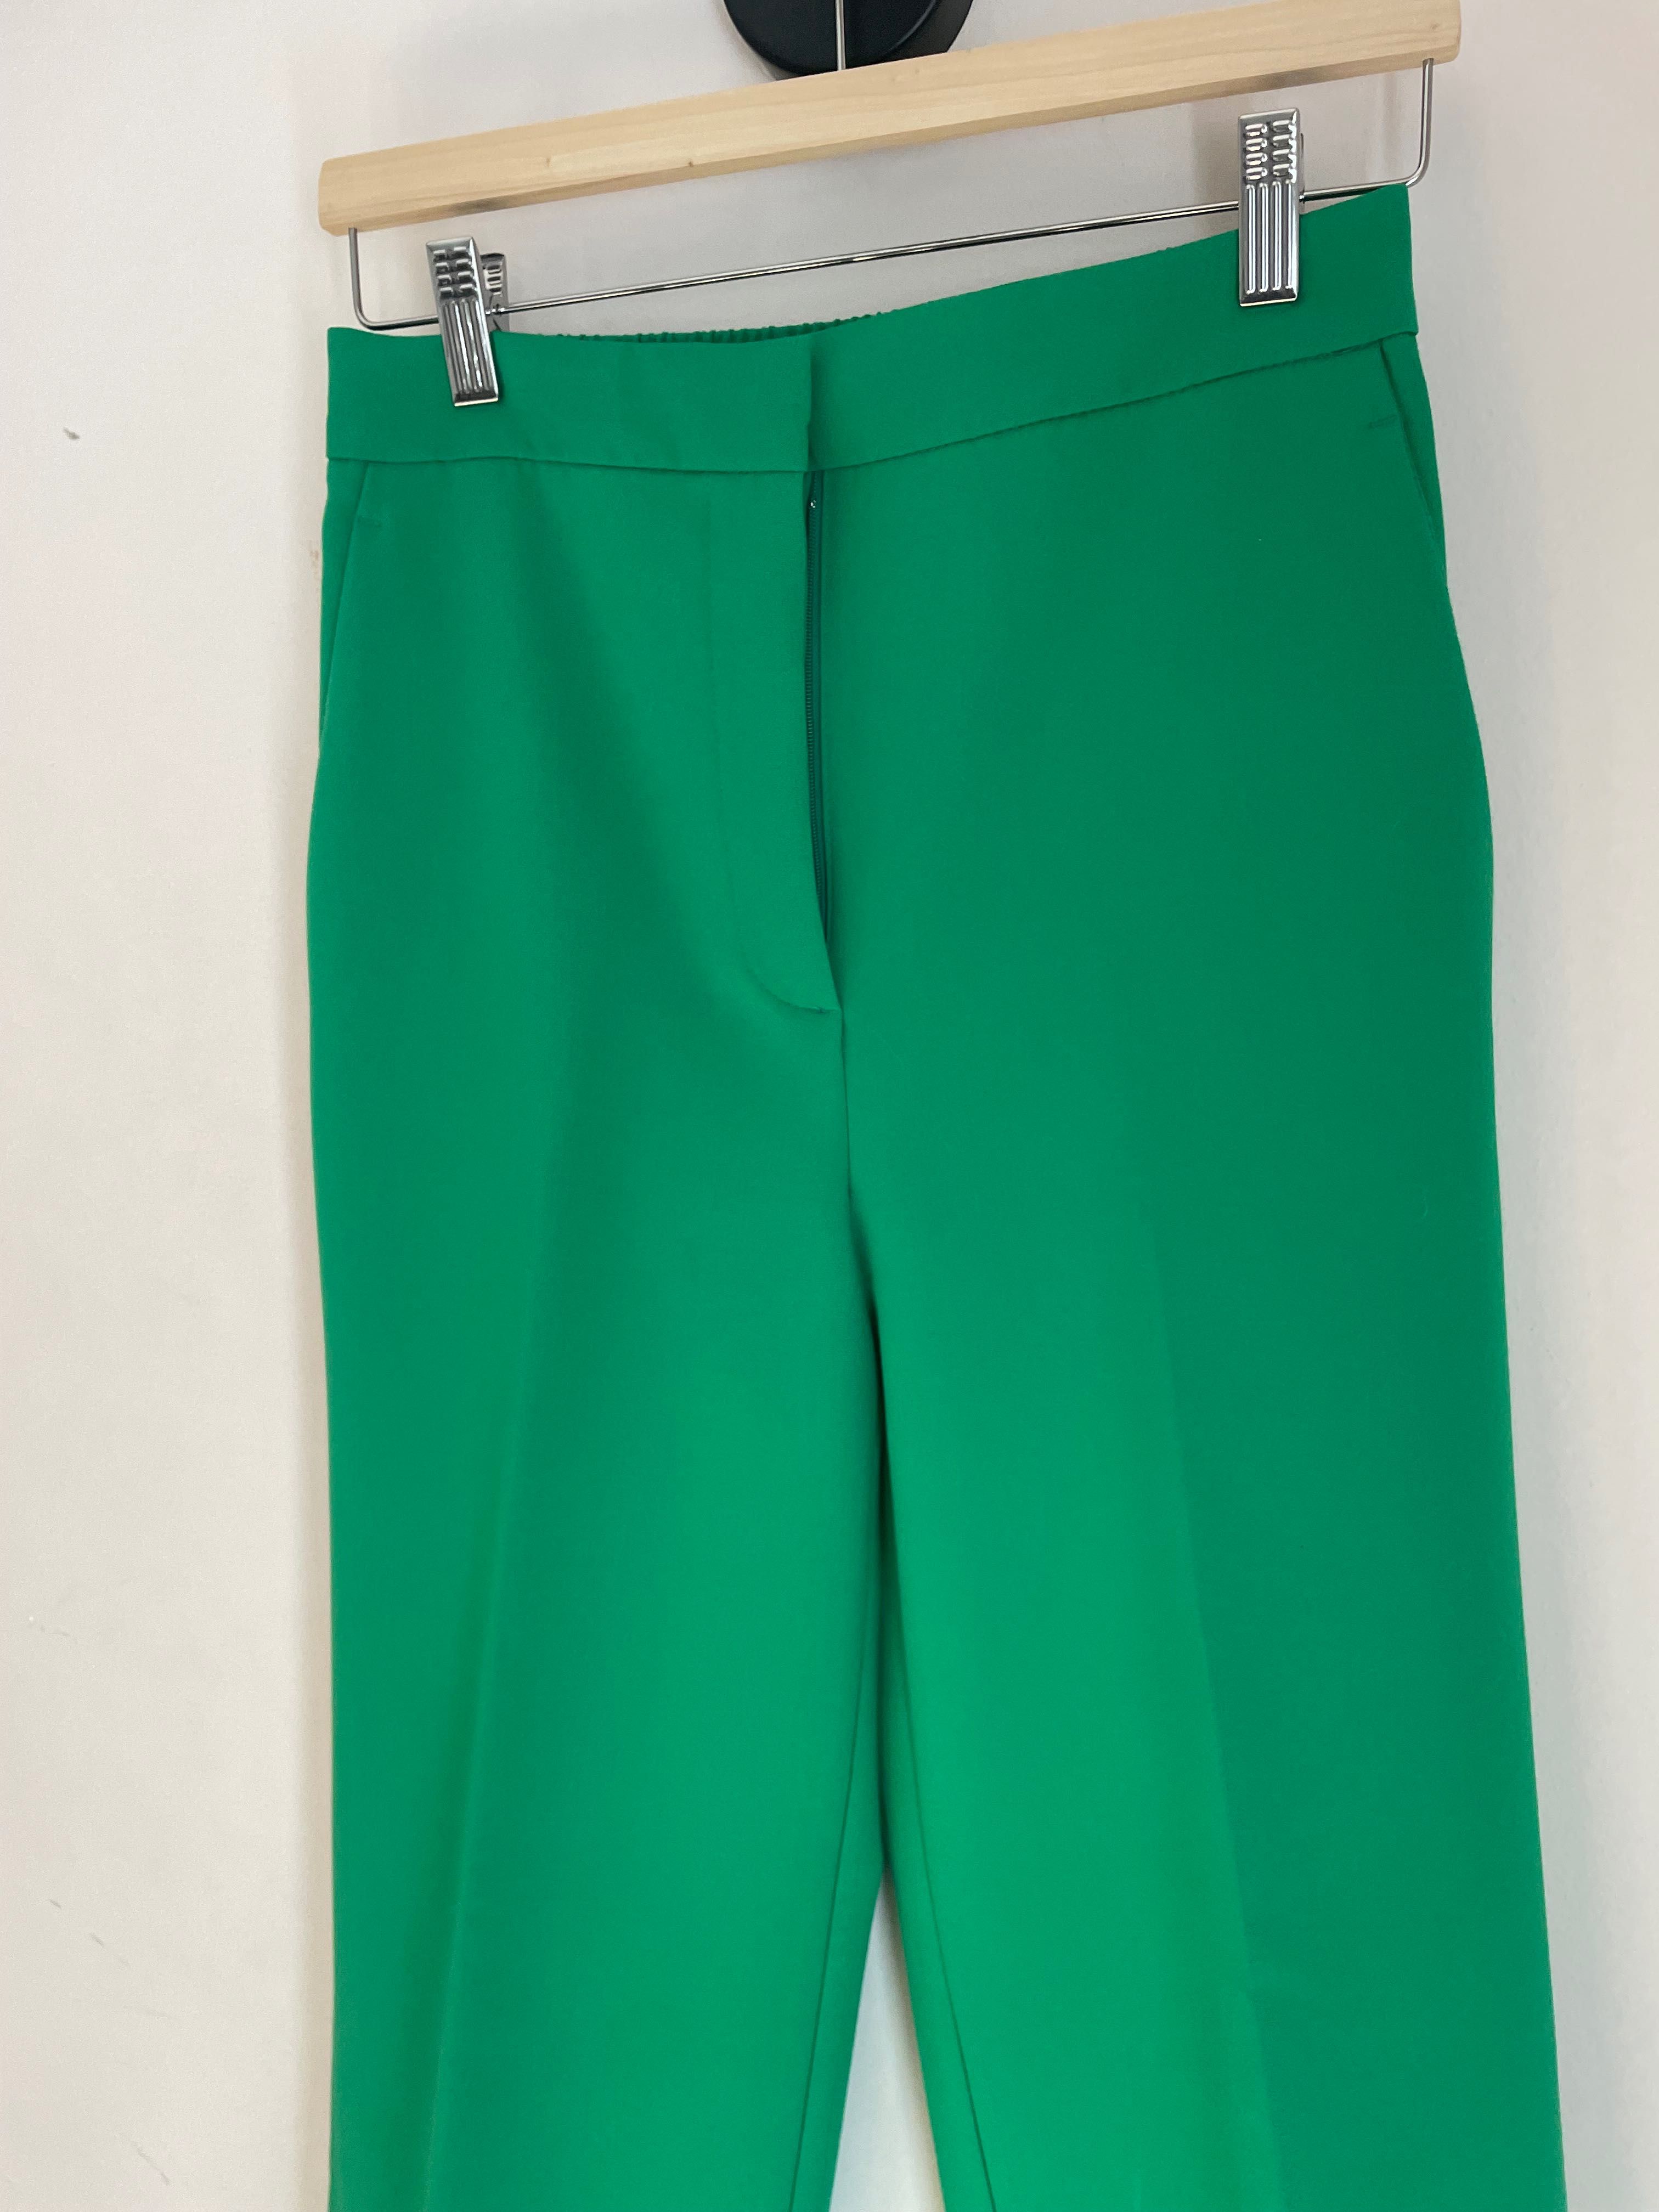 Calças verdes Zara